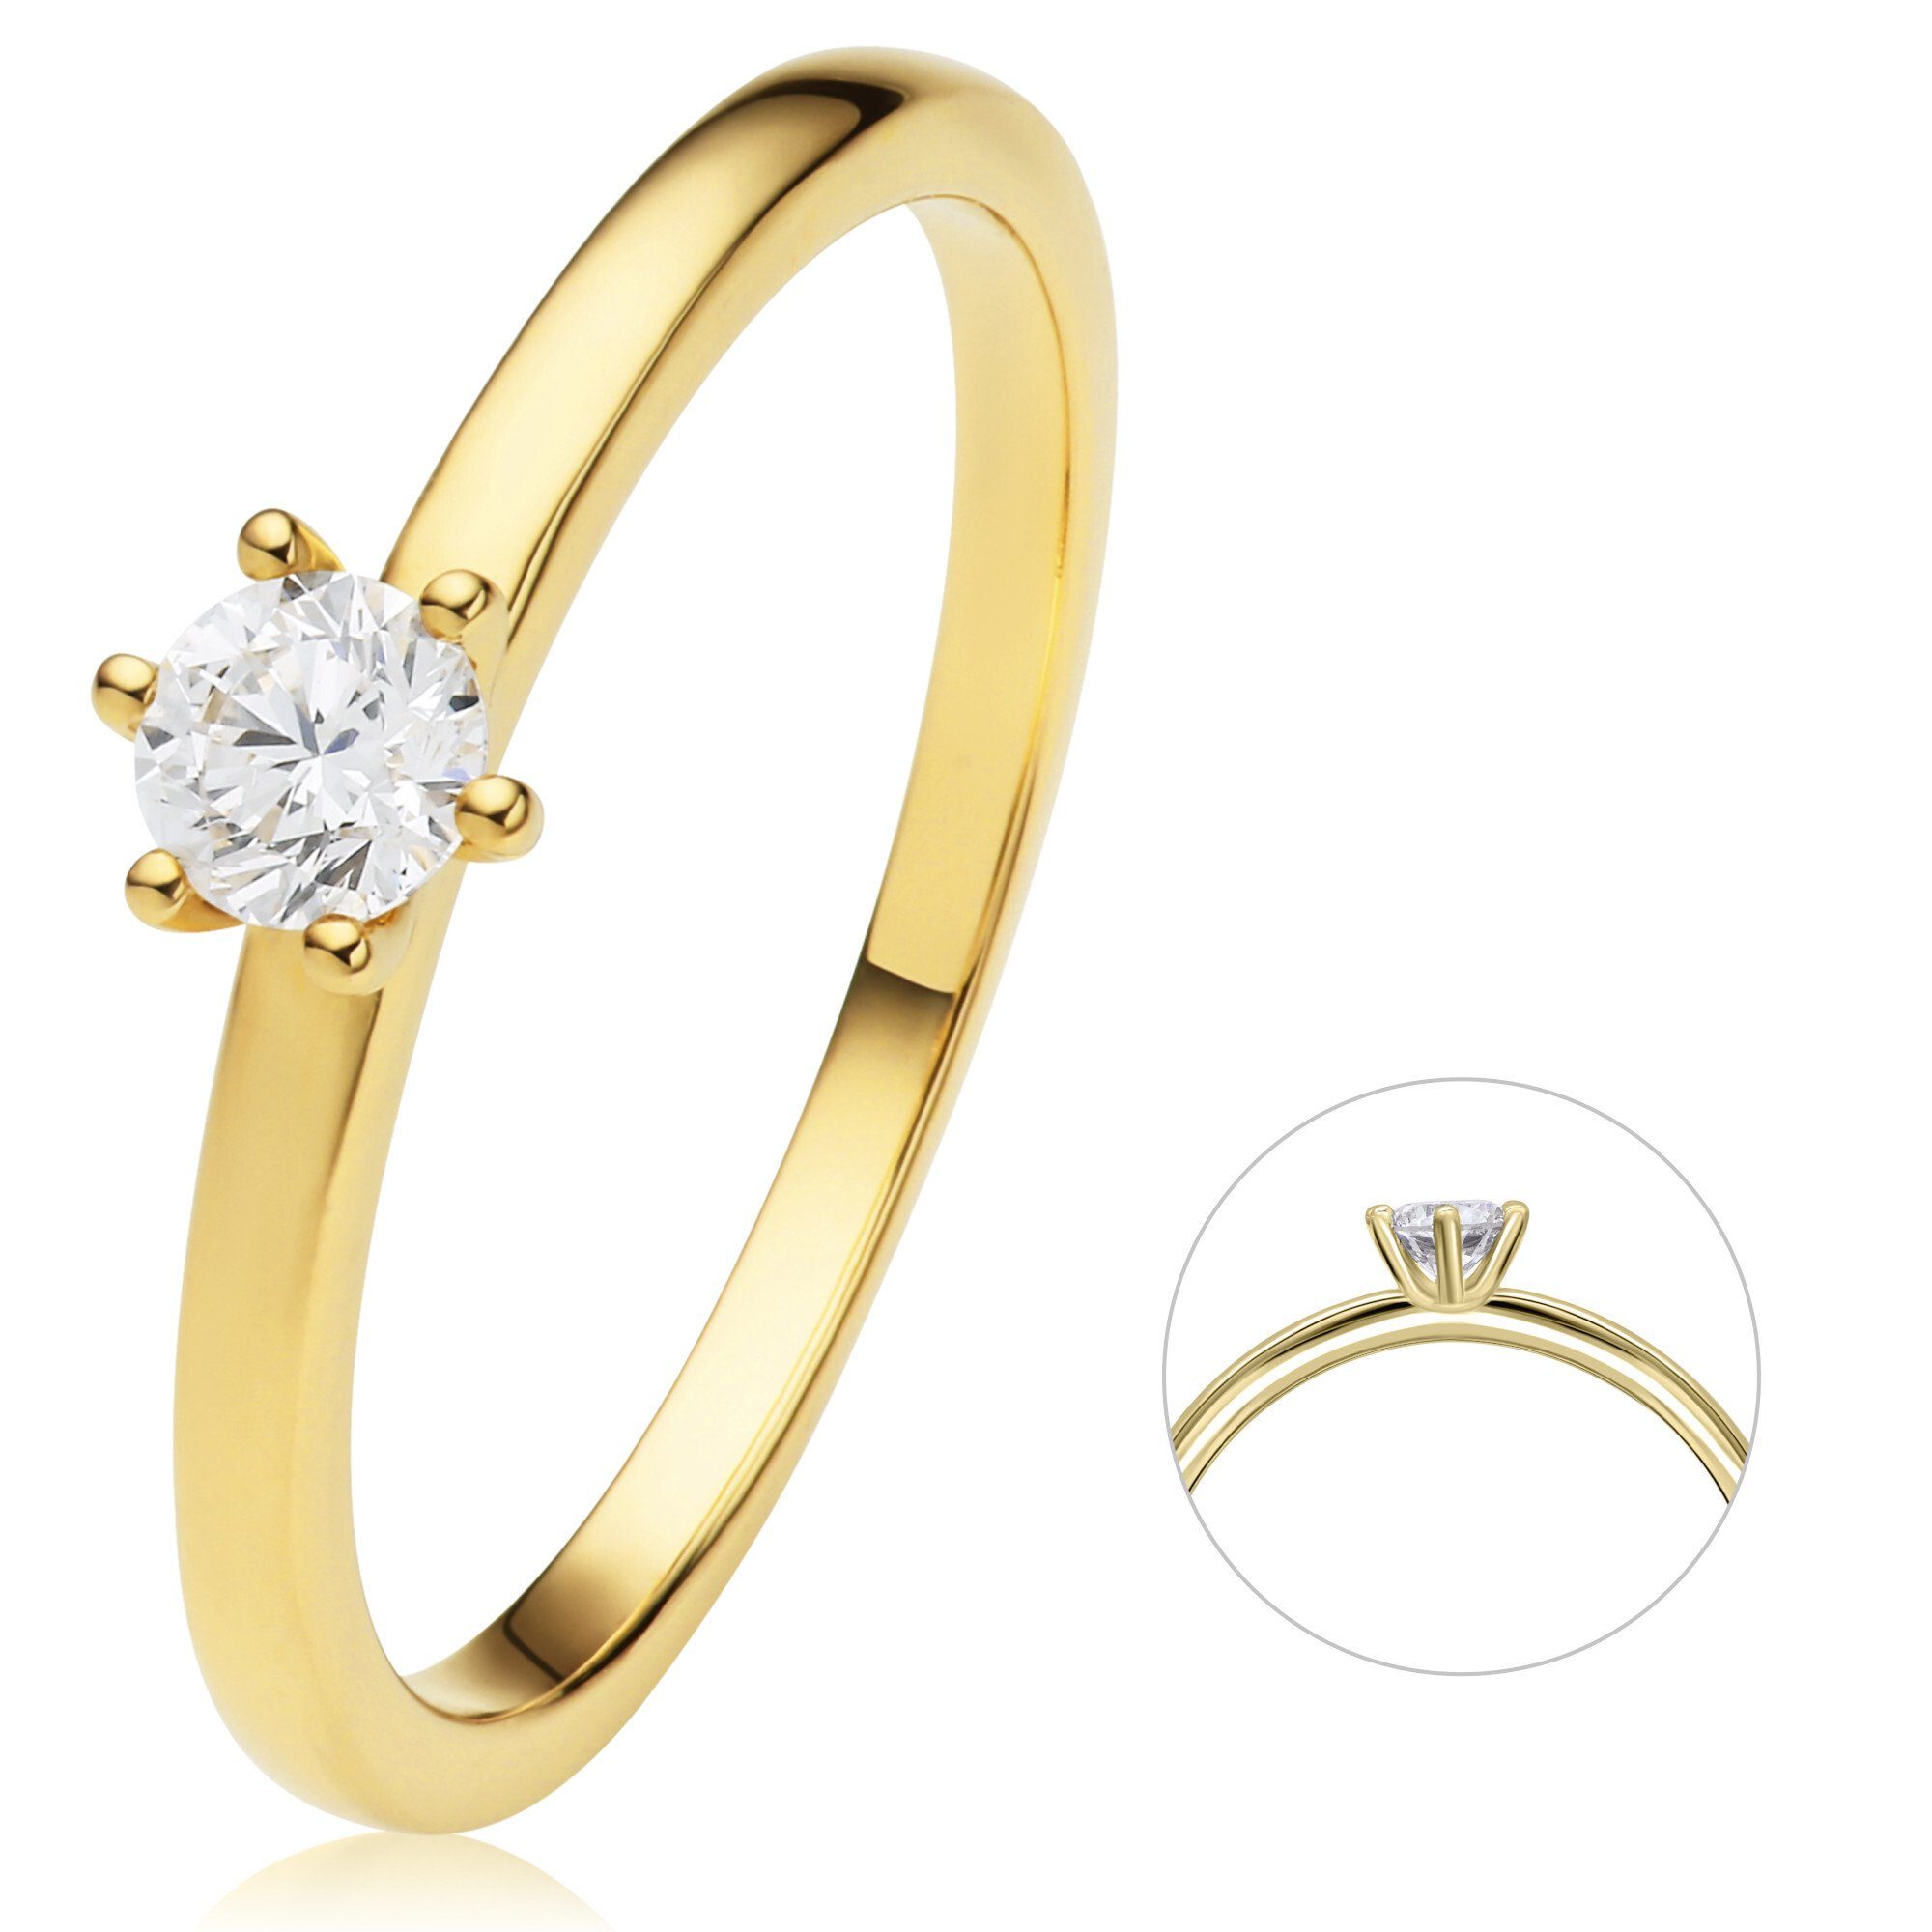 ONE ELEMENT aus 750 Diamantring Damen Diamant Schmuck Brillant Gold ct Ring 0.25 Gelbgold